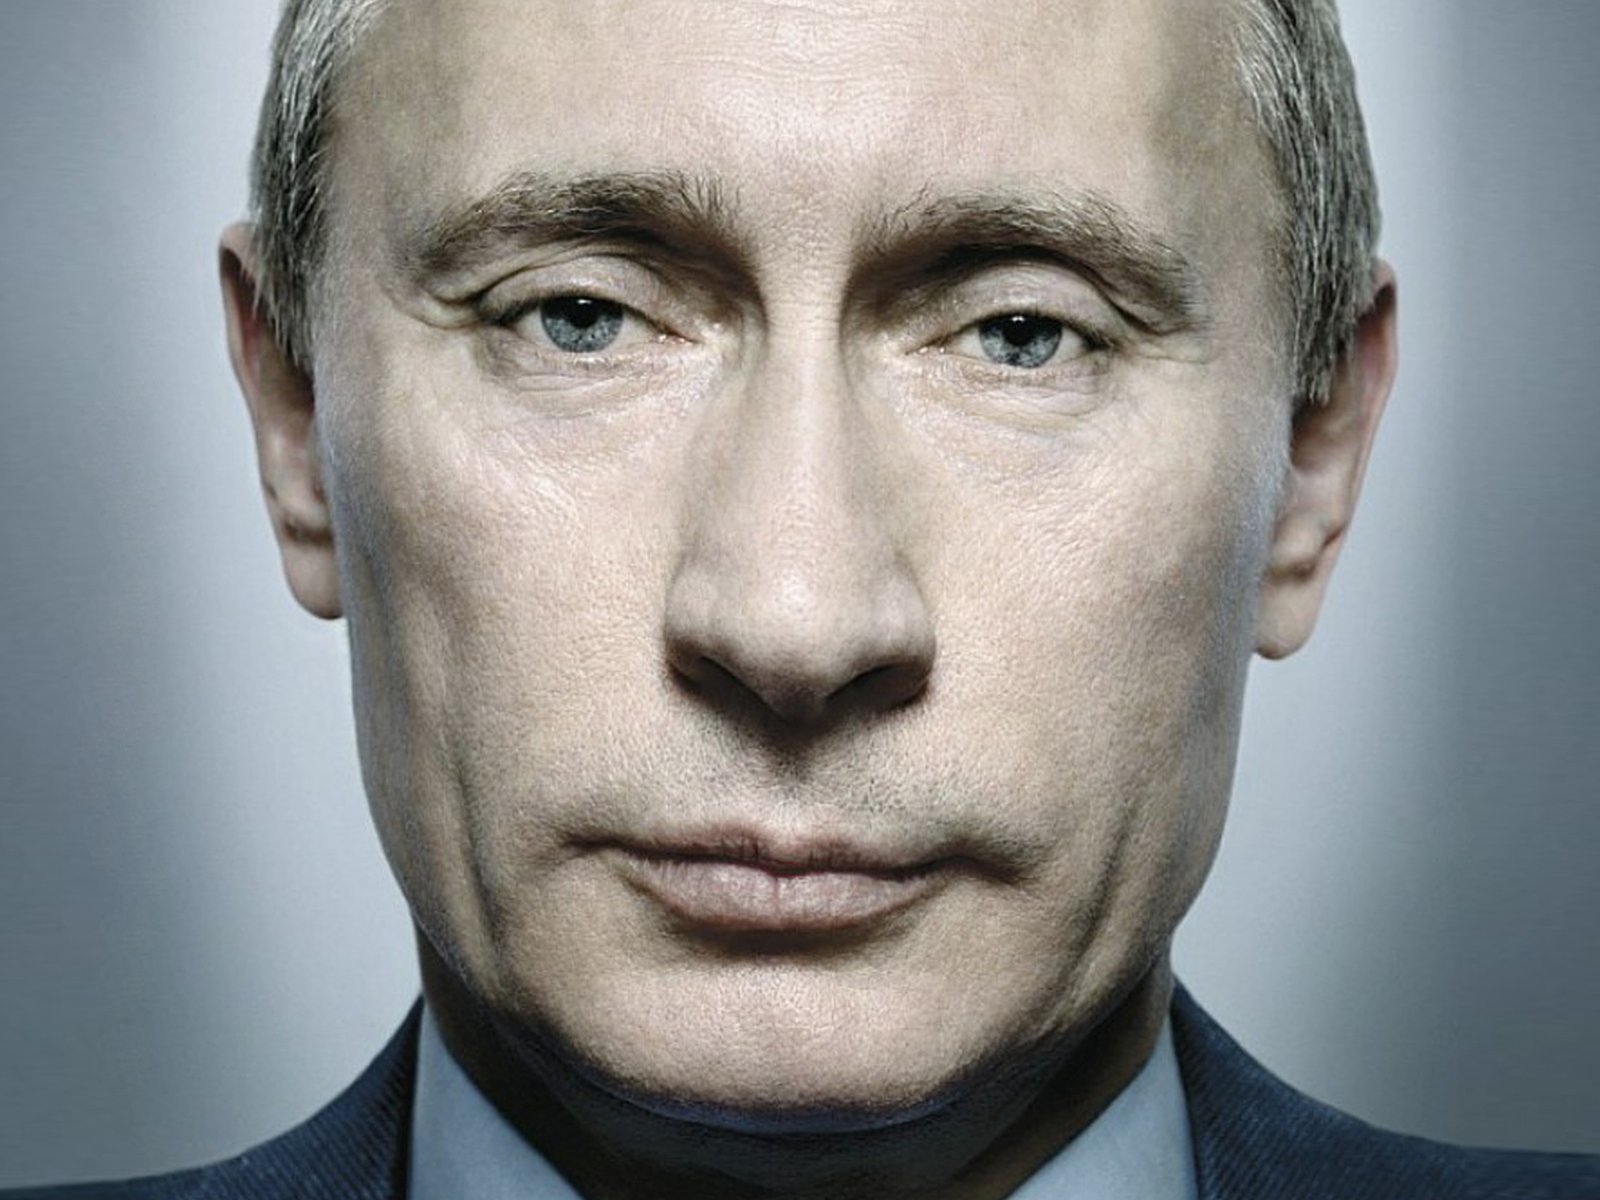 Фото Путина На Заставку